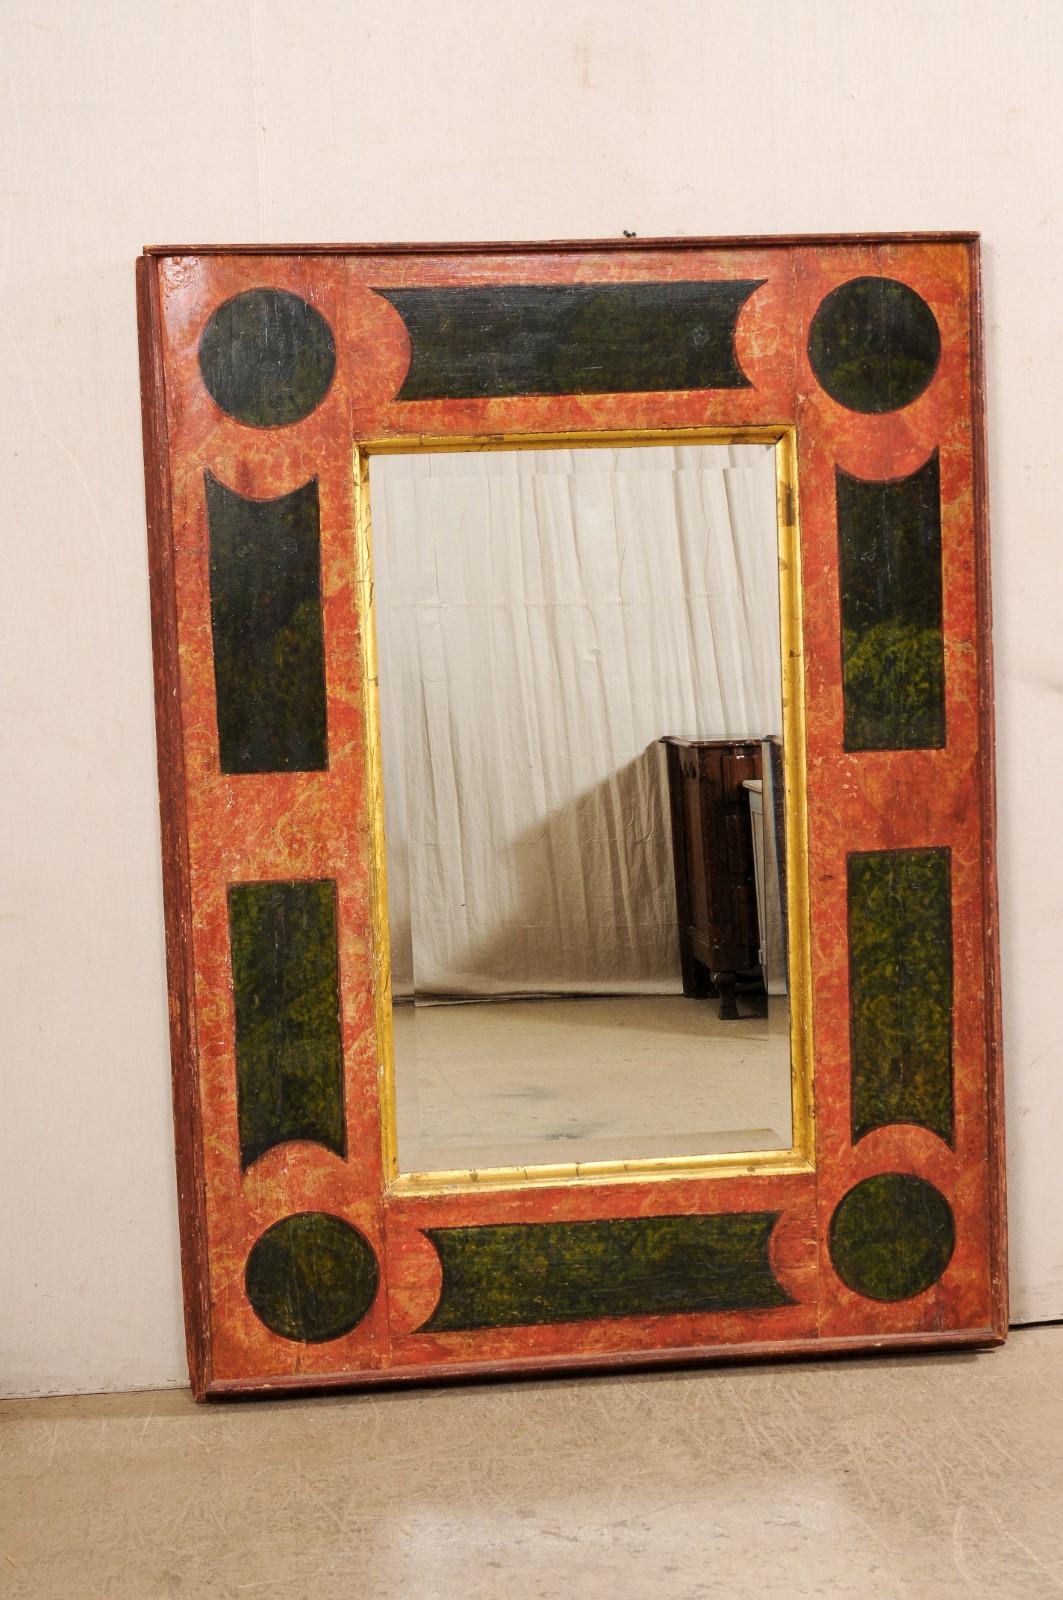 Großer italienischer Holzspiegel aus dem 18. Jahrhundert mit originaler handgemalter und vergoldeter Oberfläche. Dieser antike Spiegel aus Italien ist ein großformatiges Stück mit einer Breite von etwa 4,5 Fuß und einer Höhe von 6,5 Fuß. Dieser